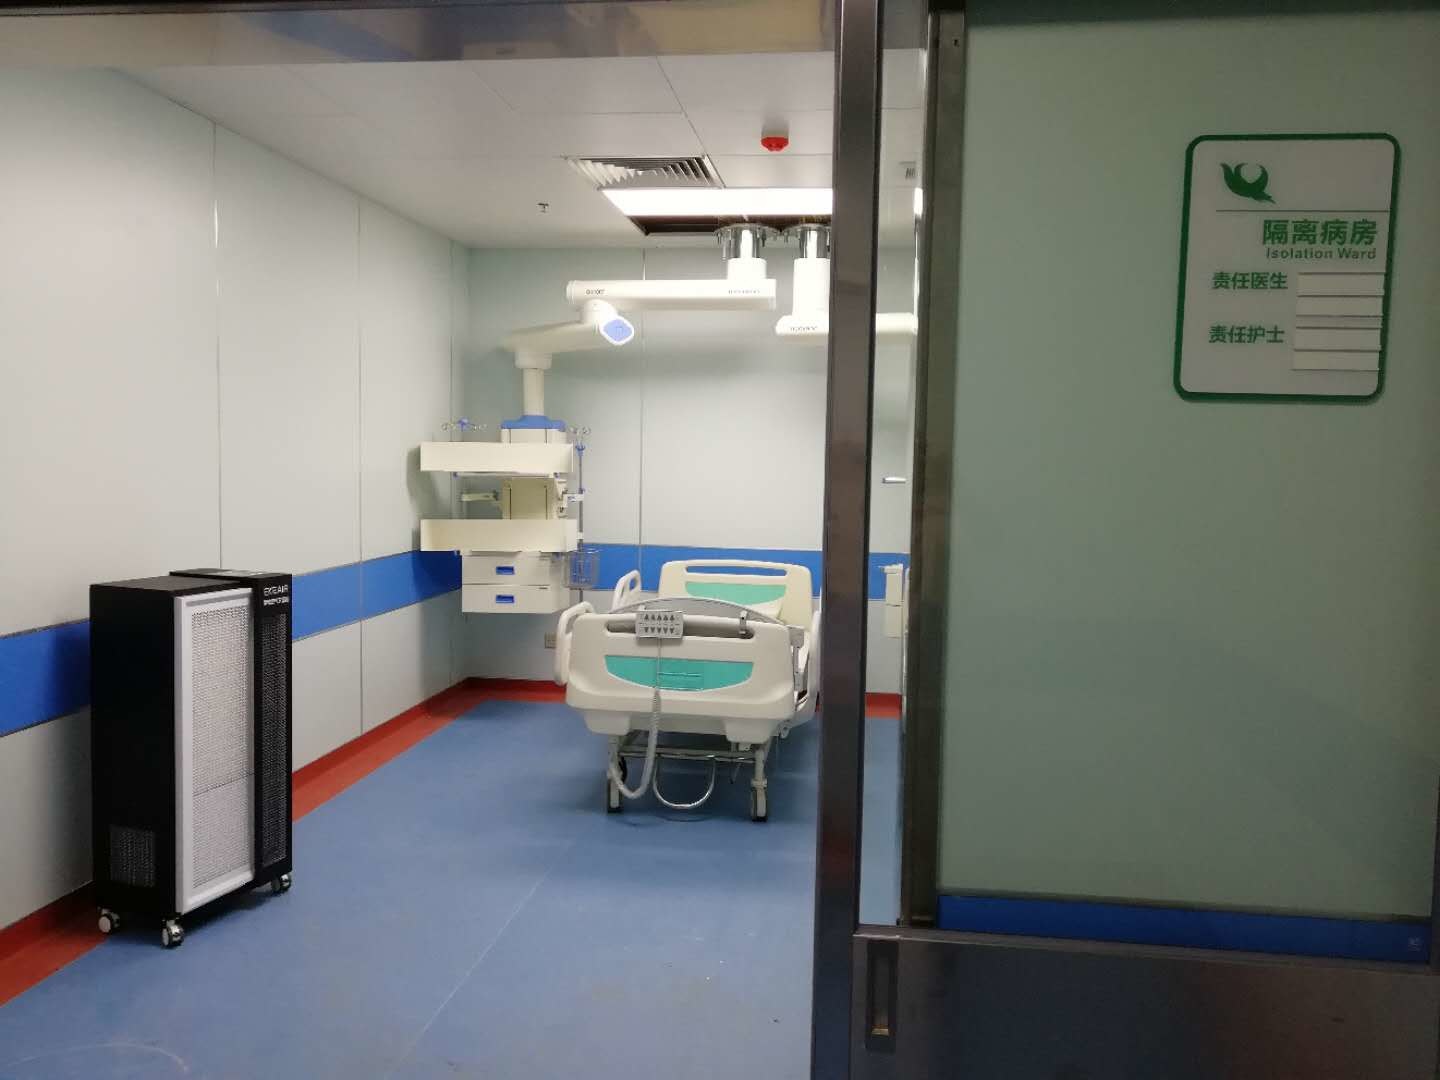 Dernière affaire concernant Nouveau campus, quatrième hôpital d'université médicale d'Anhui